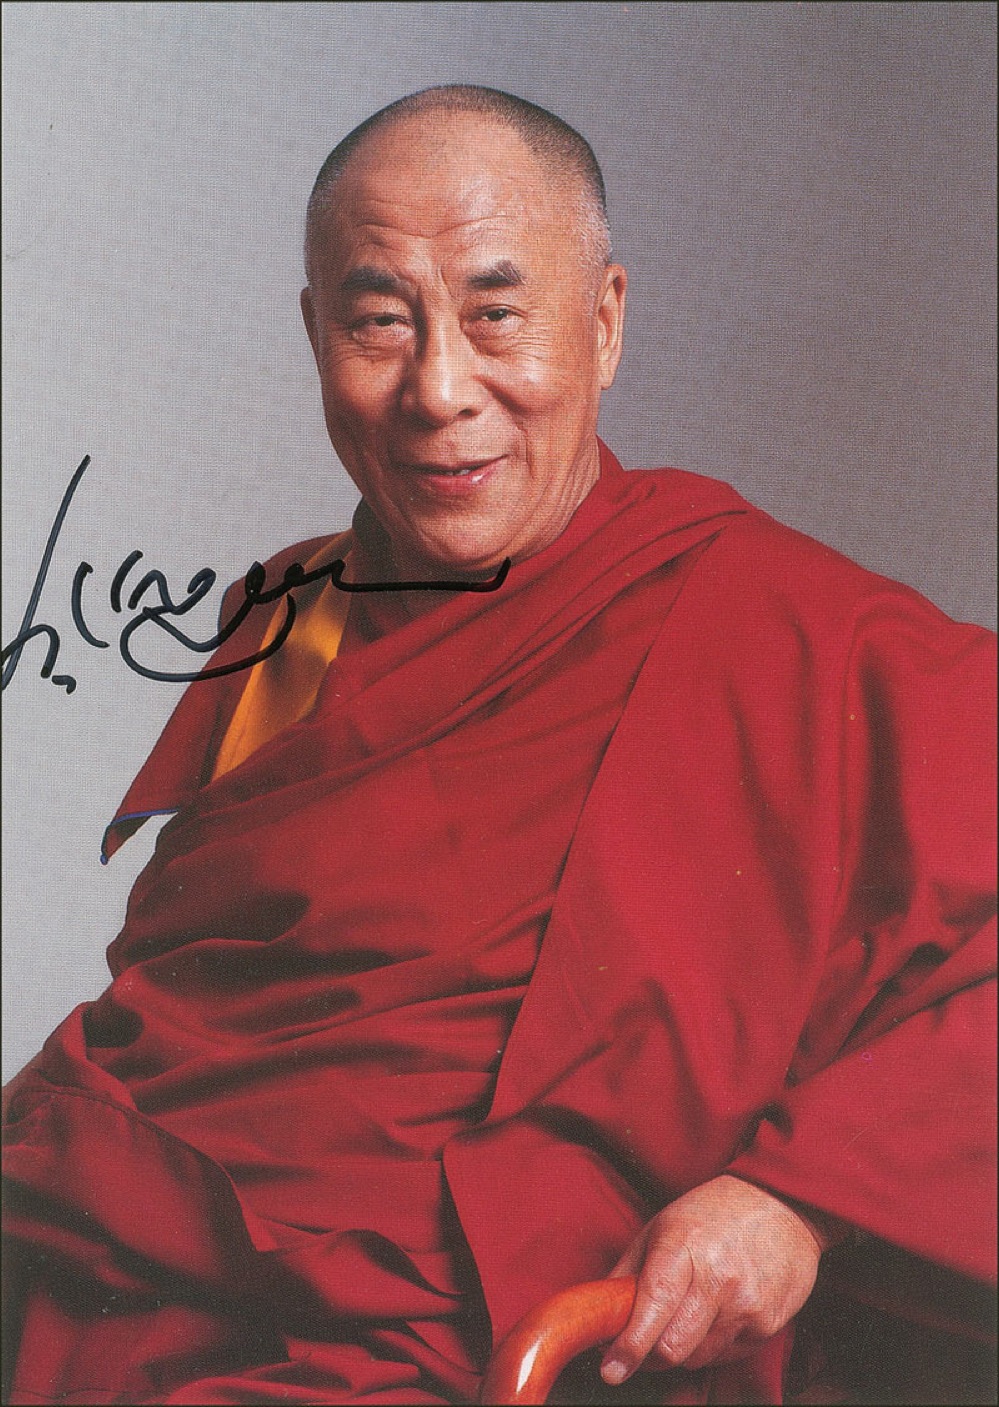 Lot #189 Dalai Lama